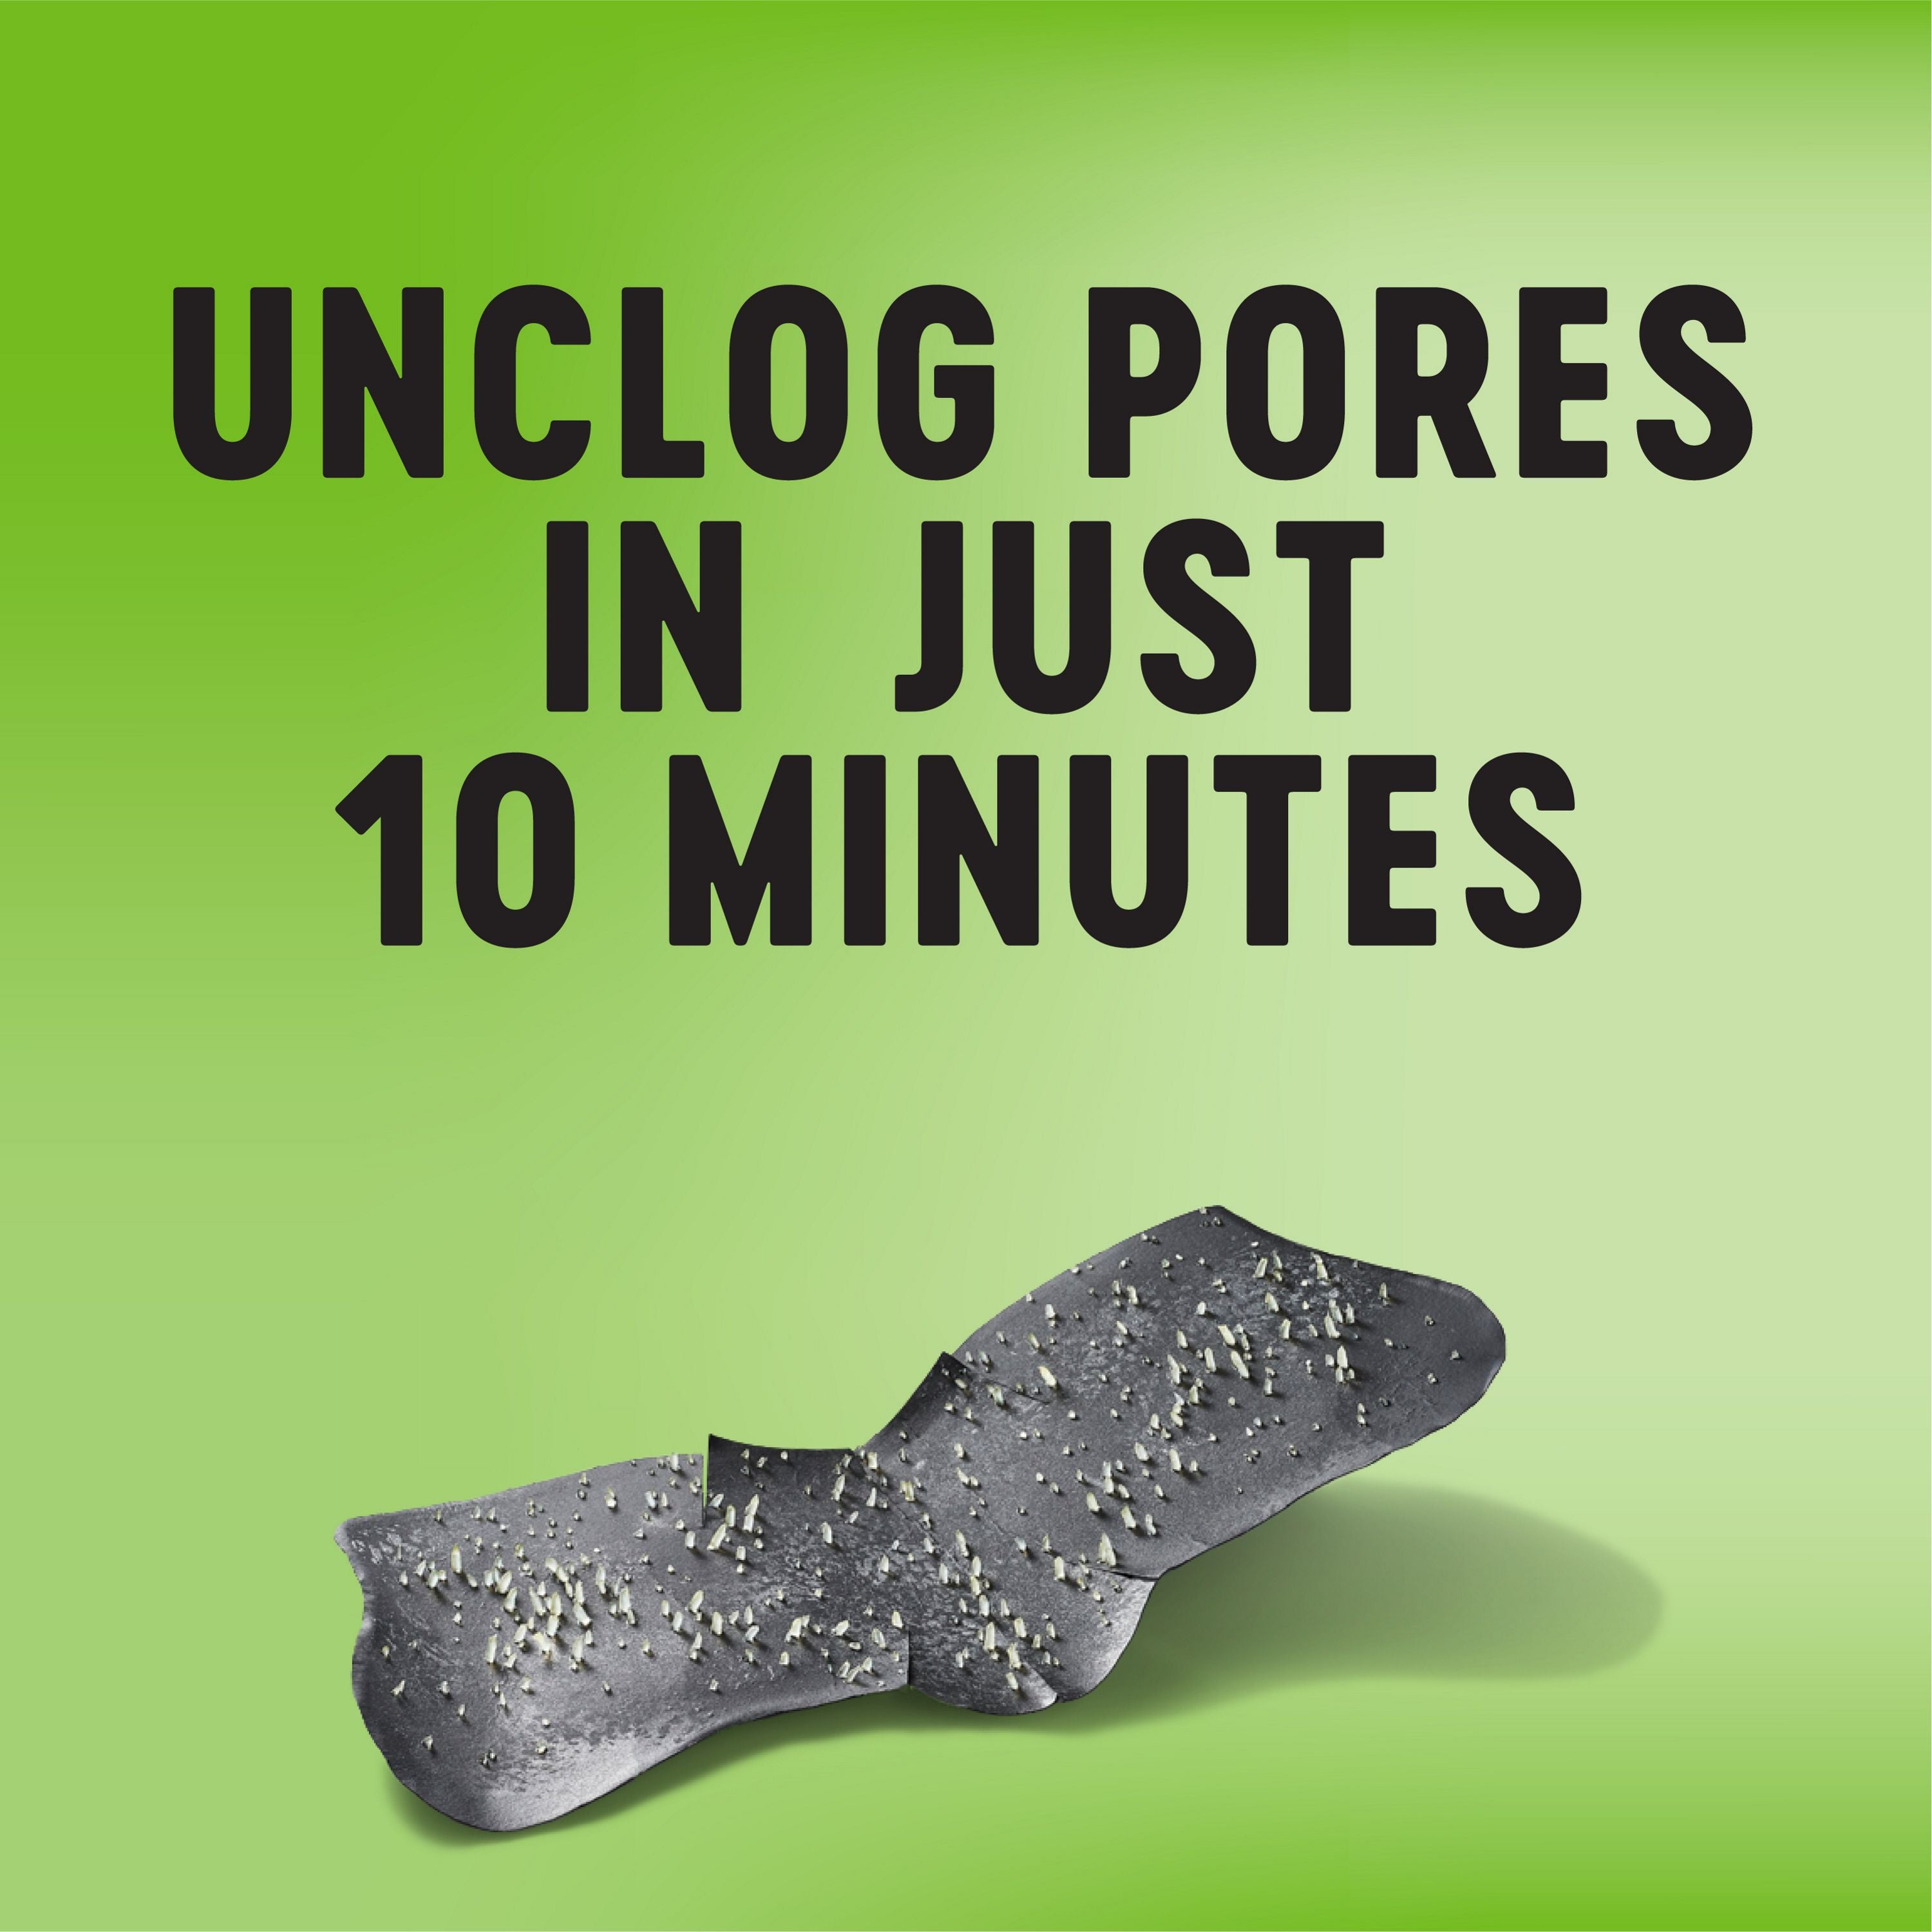 English: Unclog pores in just 10 minutes Français: Désincruste les pores en seulement 10 minutes